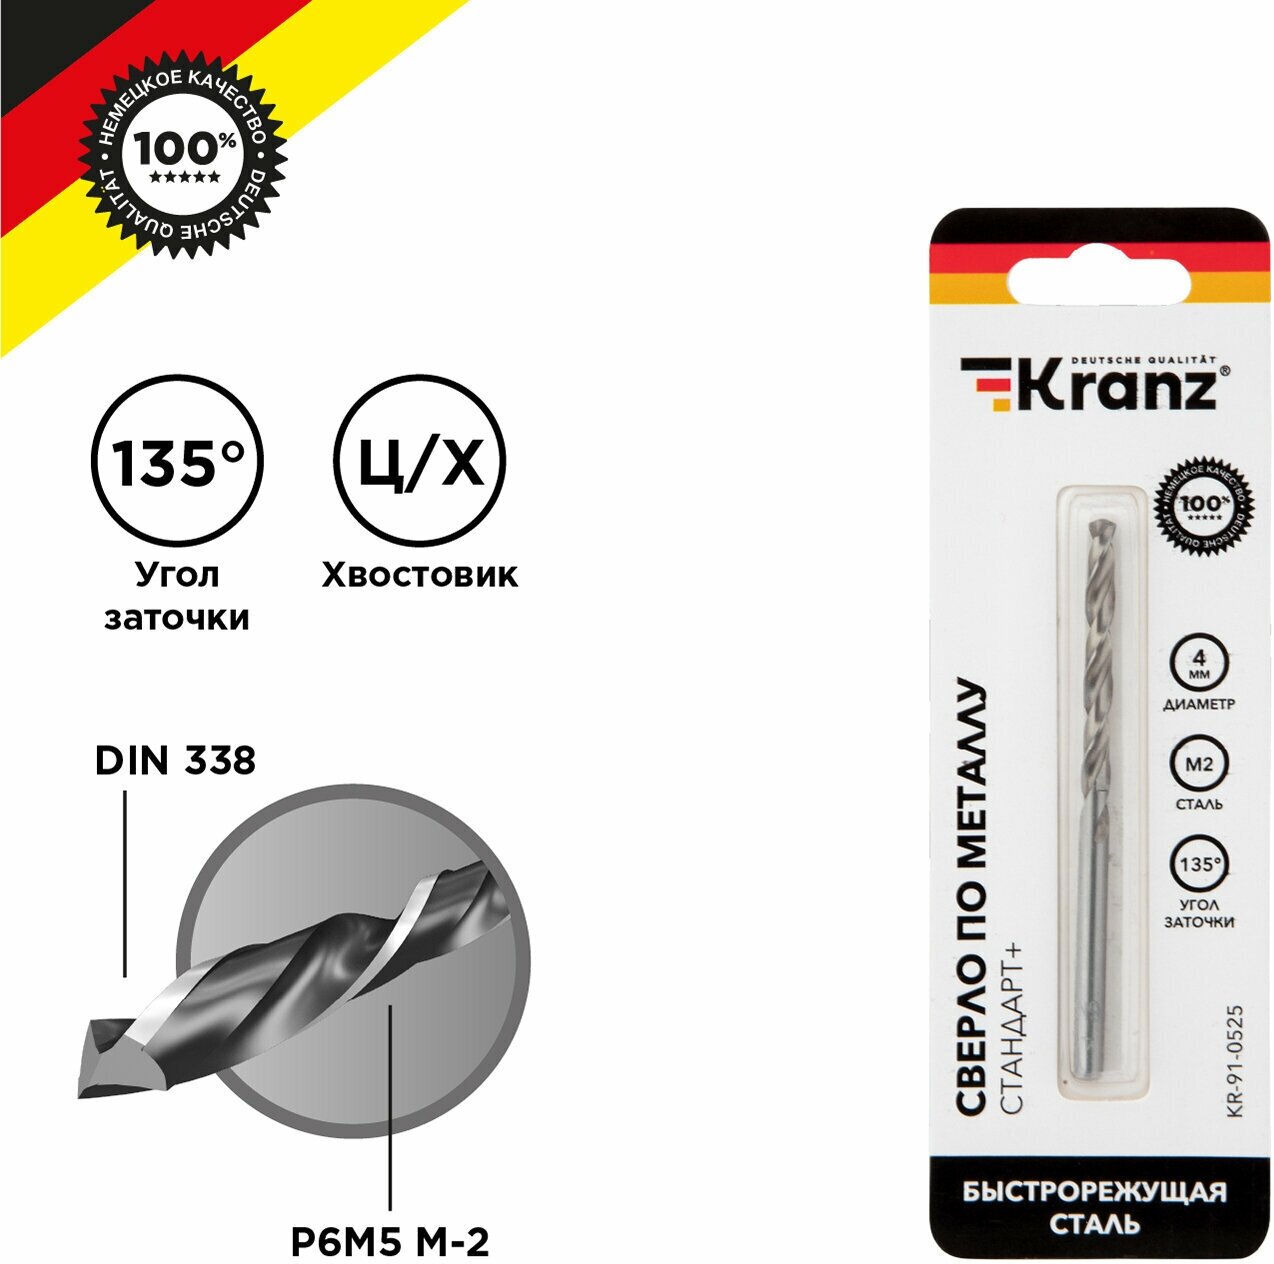 Сверло по металлу KRANZ 4 мм Стандарт+ из быстрорежущей стали P6M5 M-2, в упаковке 1 шт, стандарт DIN 338